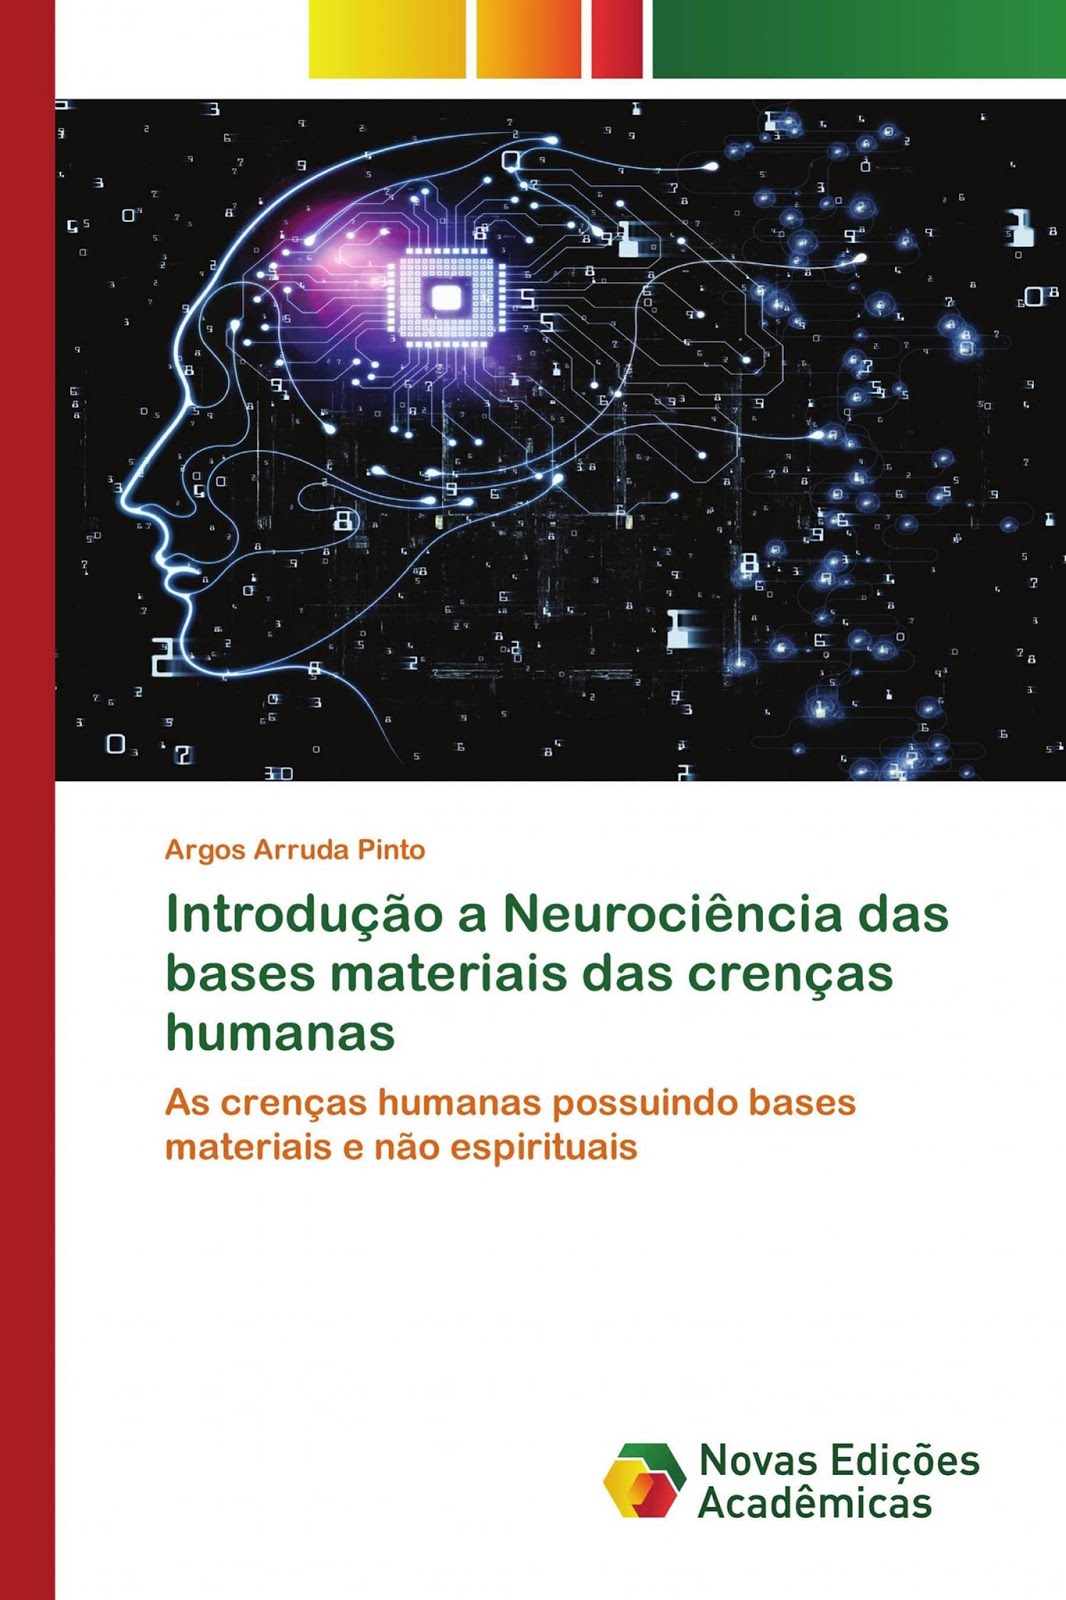 Meu segundo livro: "Introdução a neurociência das bases materiais das crenças humanas"